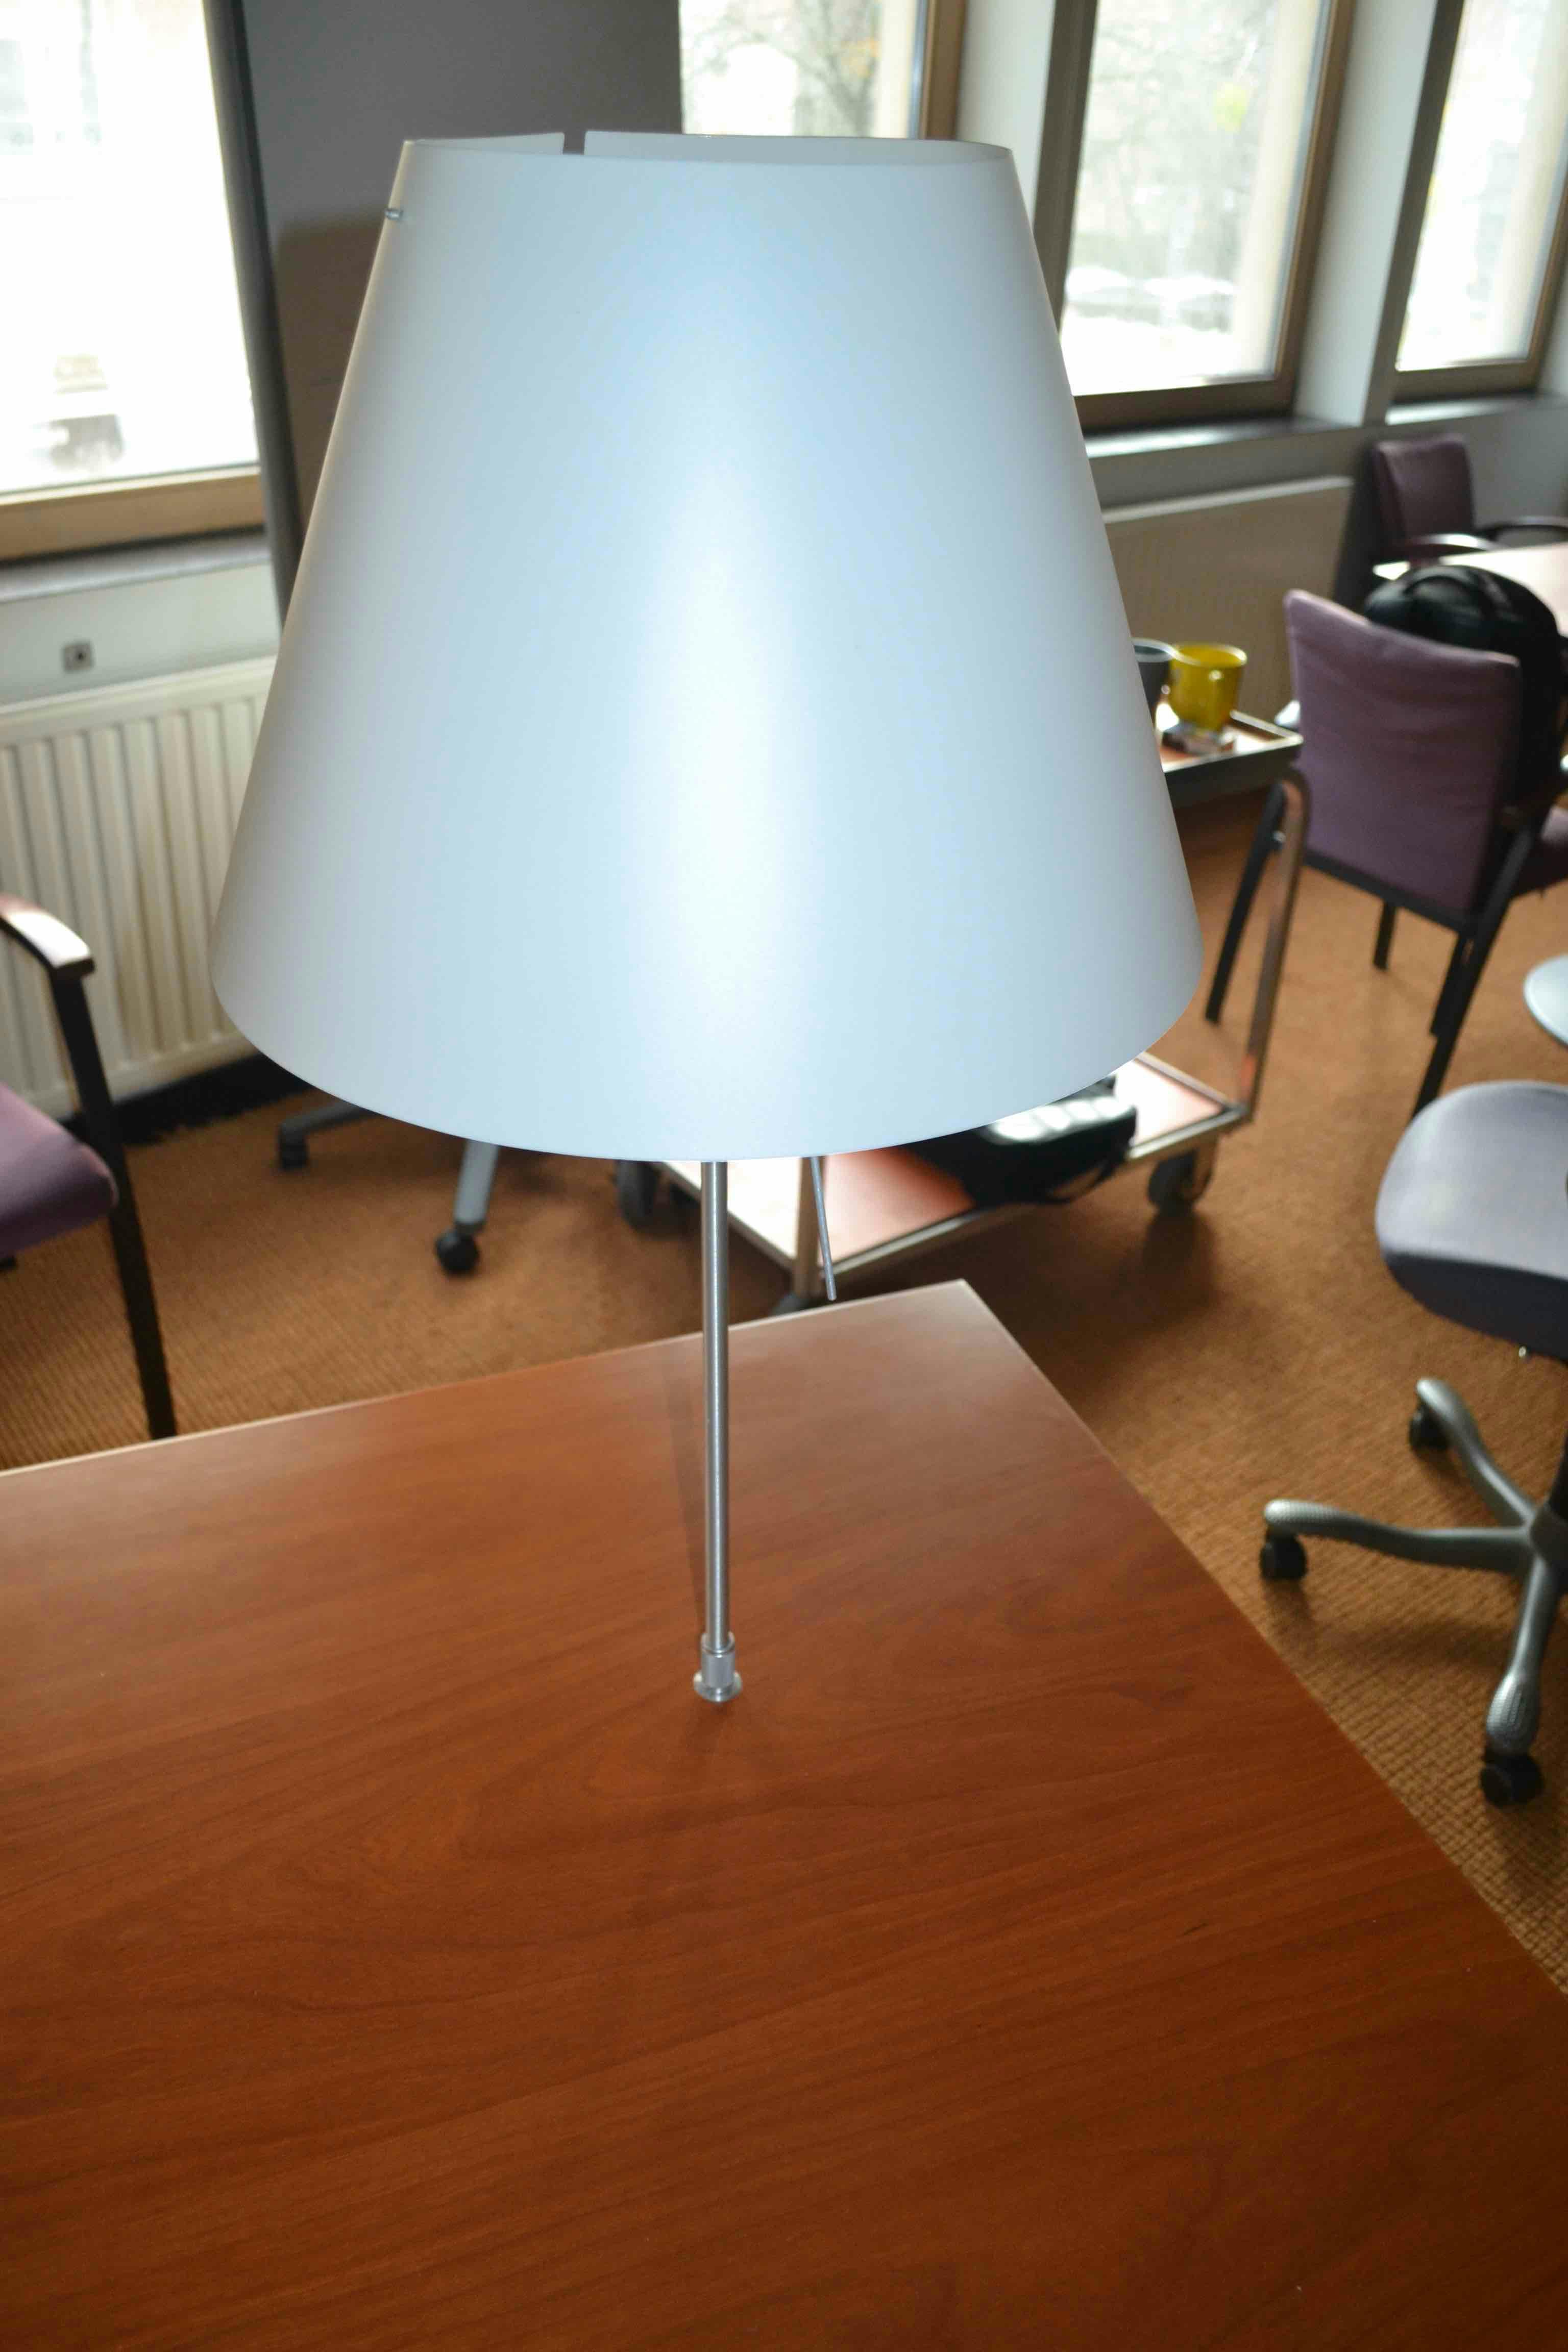 Bureau en L avec lampe / Bureau L Vorm met lamp - Tweedehands kwaliteit "Bureaus" - Relieve Furniture - 2